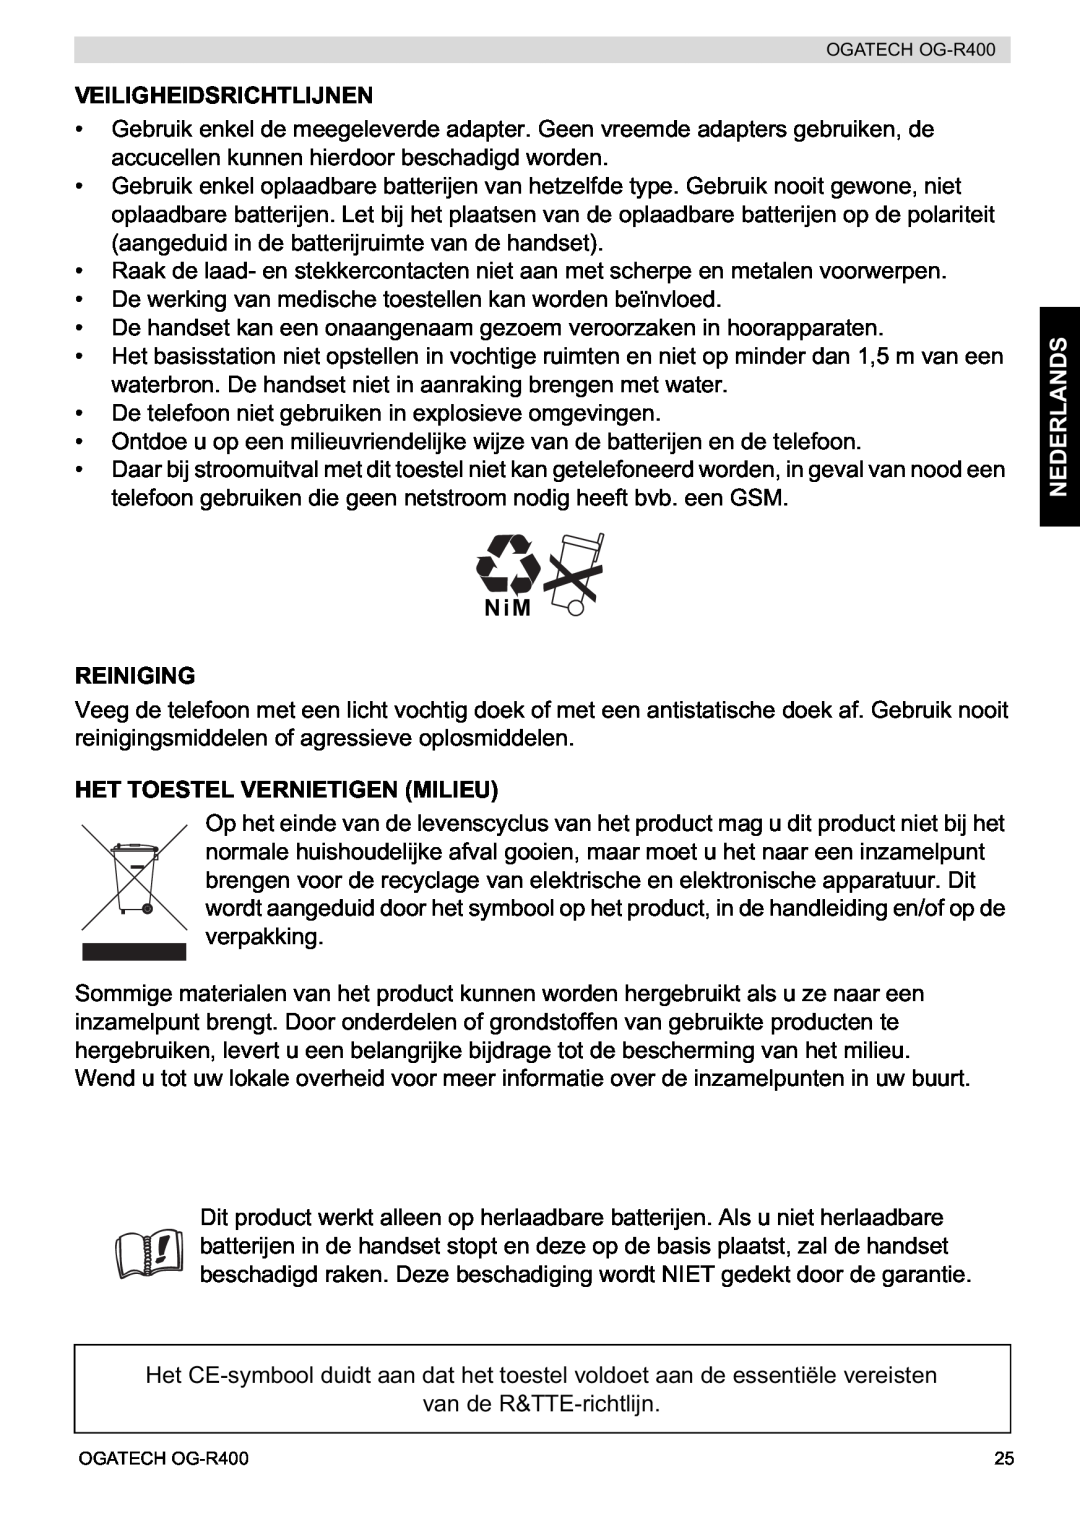 Topcom OG-R400 manual Veiligheidsrichtlijnen, NiM REINIGING, Het Toestel Vernietigen Milieu, Nederlands 